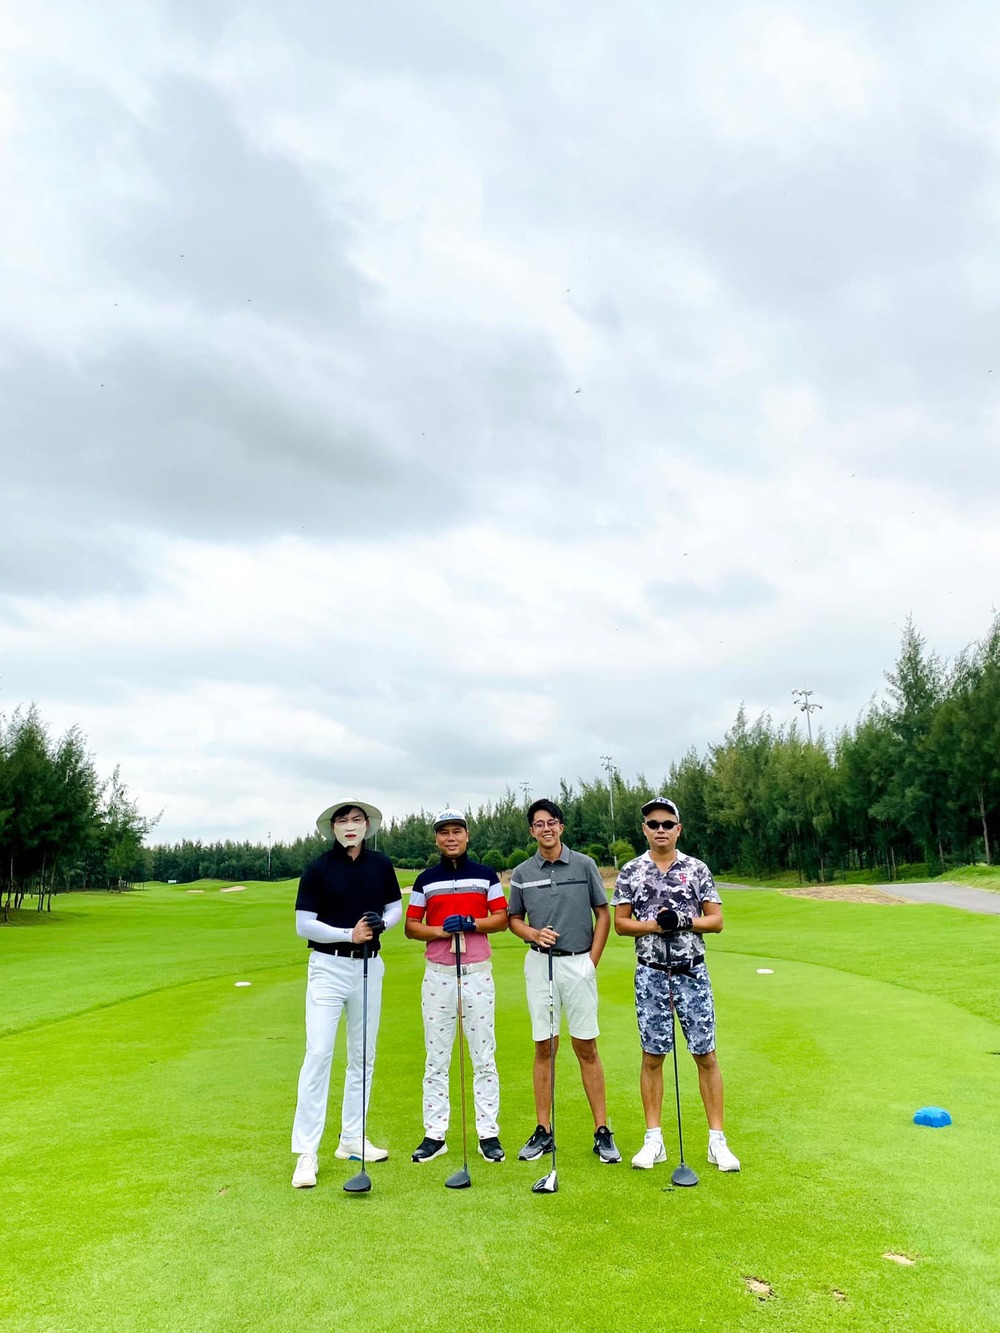  
Địa điểm Matt Liu cùng những người bạn của mình chơi golf mới đây giống hệt với "background" bức ảnh Hương Giang vừa chia sẻ. 